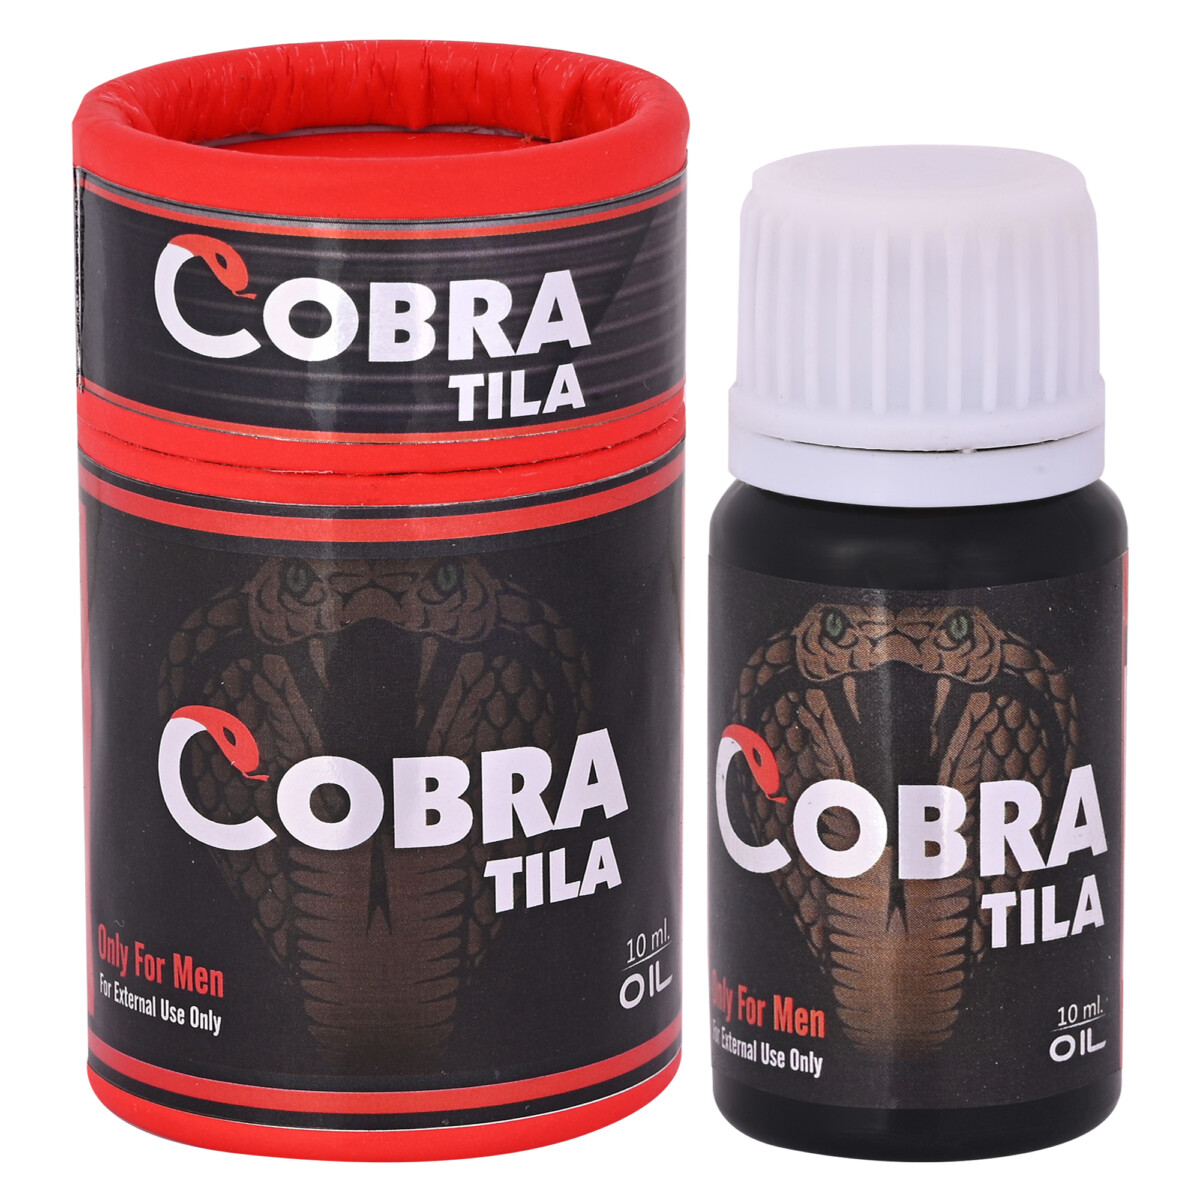 Cobra tila (Oil)